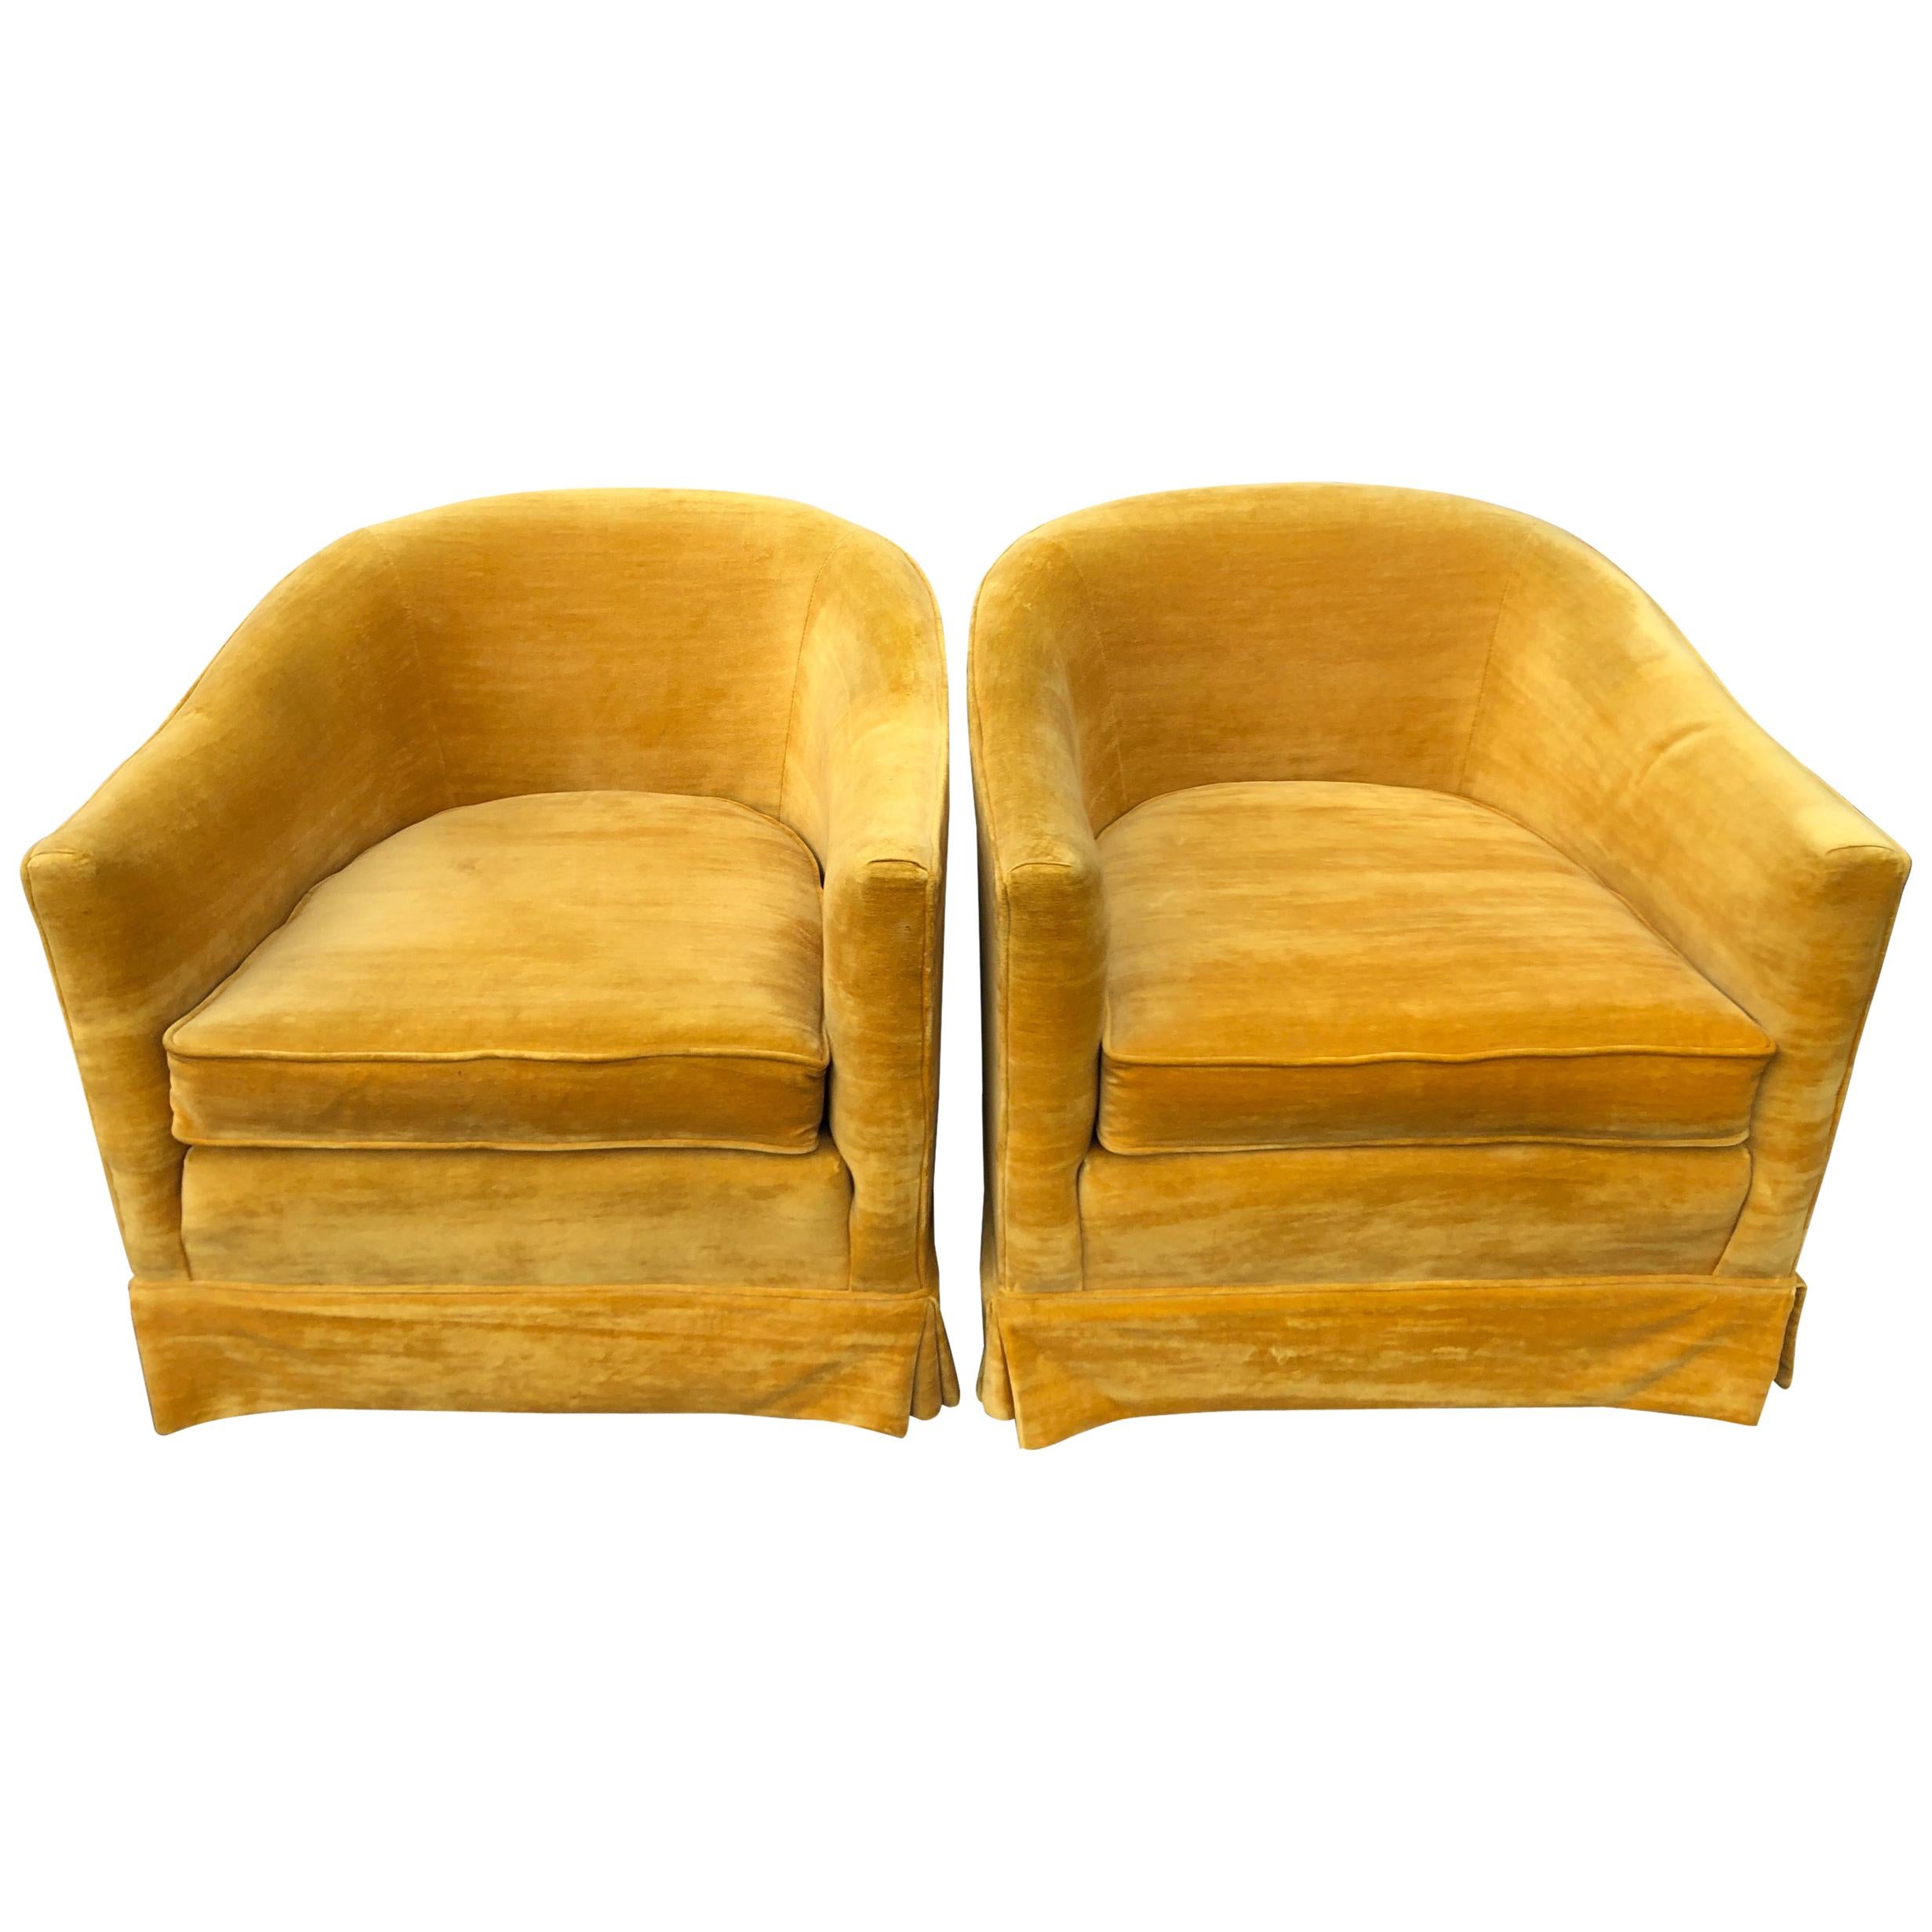 Pair of Vintage Velvet Club Chairs in Mustard